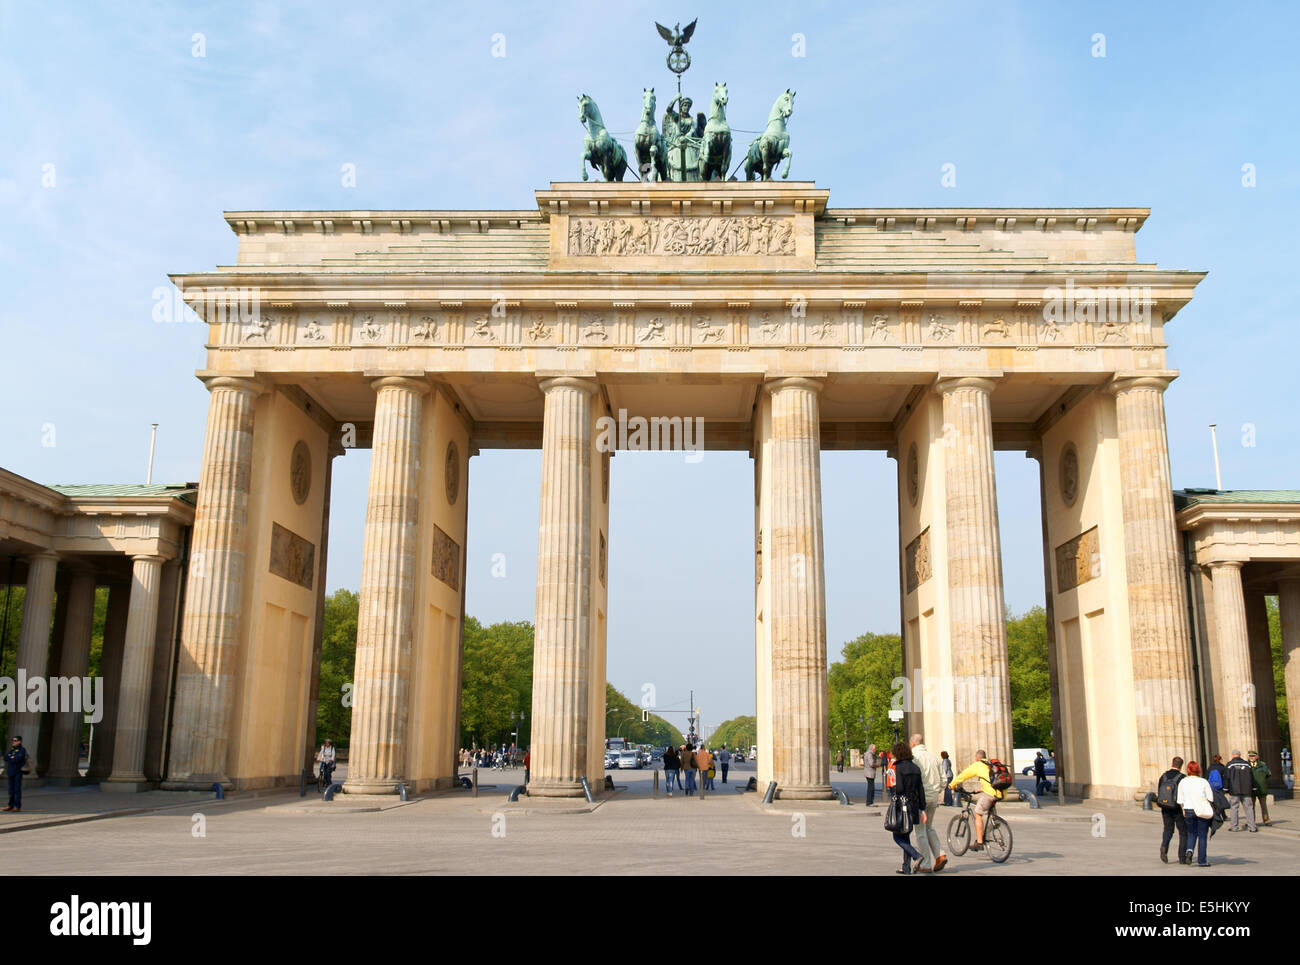 Berlino, Germania - 17 Aprile 2009: Porta di Brandeburgo e la quadriga statua in bronzo. Alcuni cittadini e turisti in giro per la città di ga Foto Stock